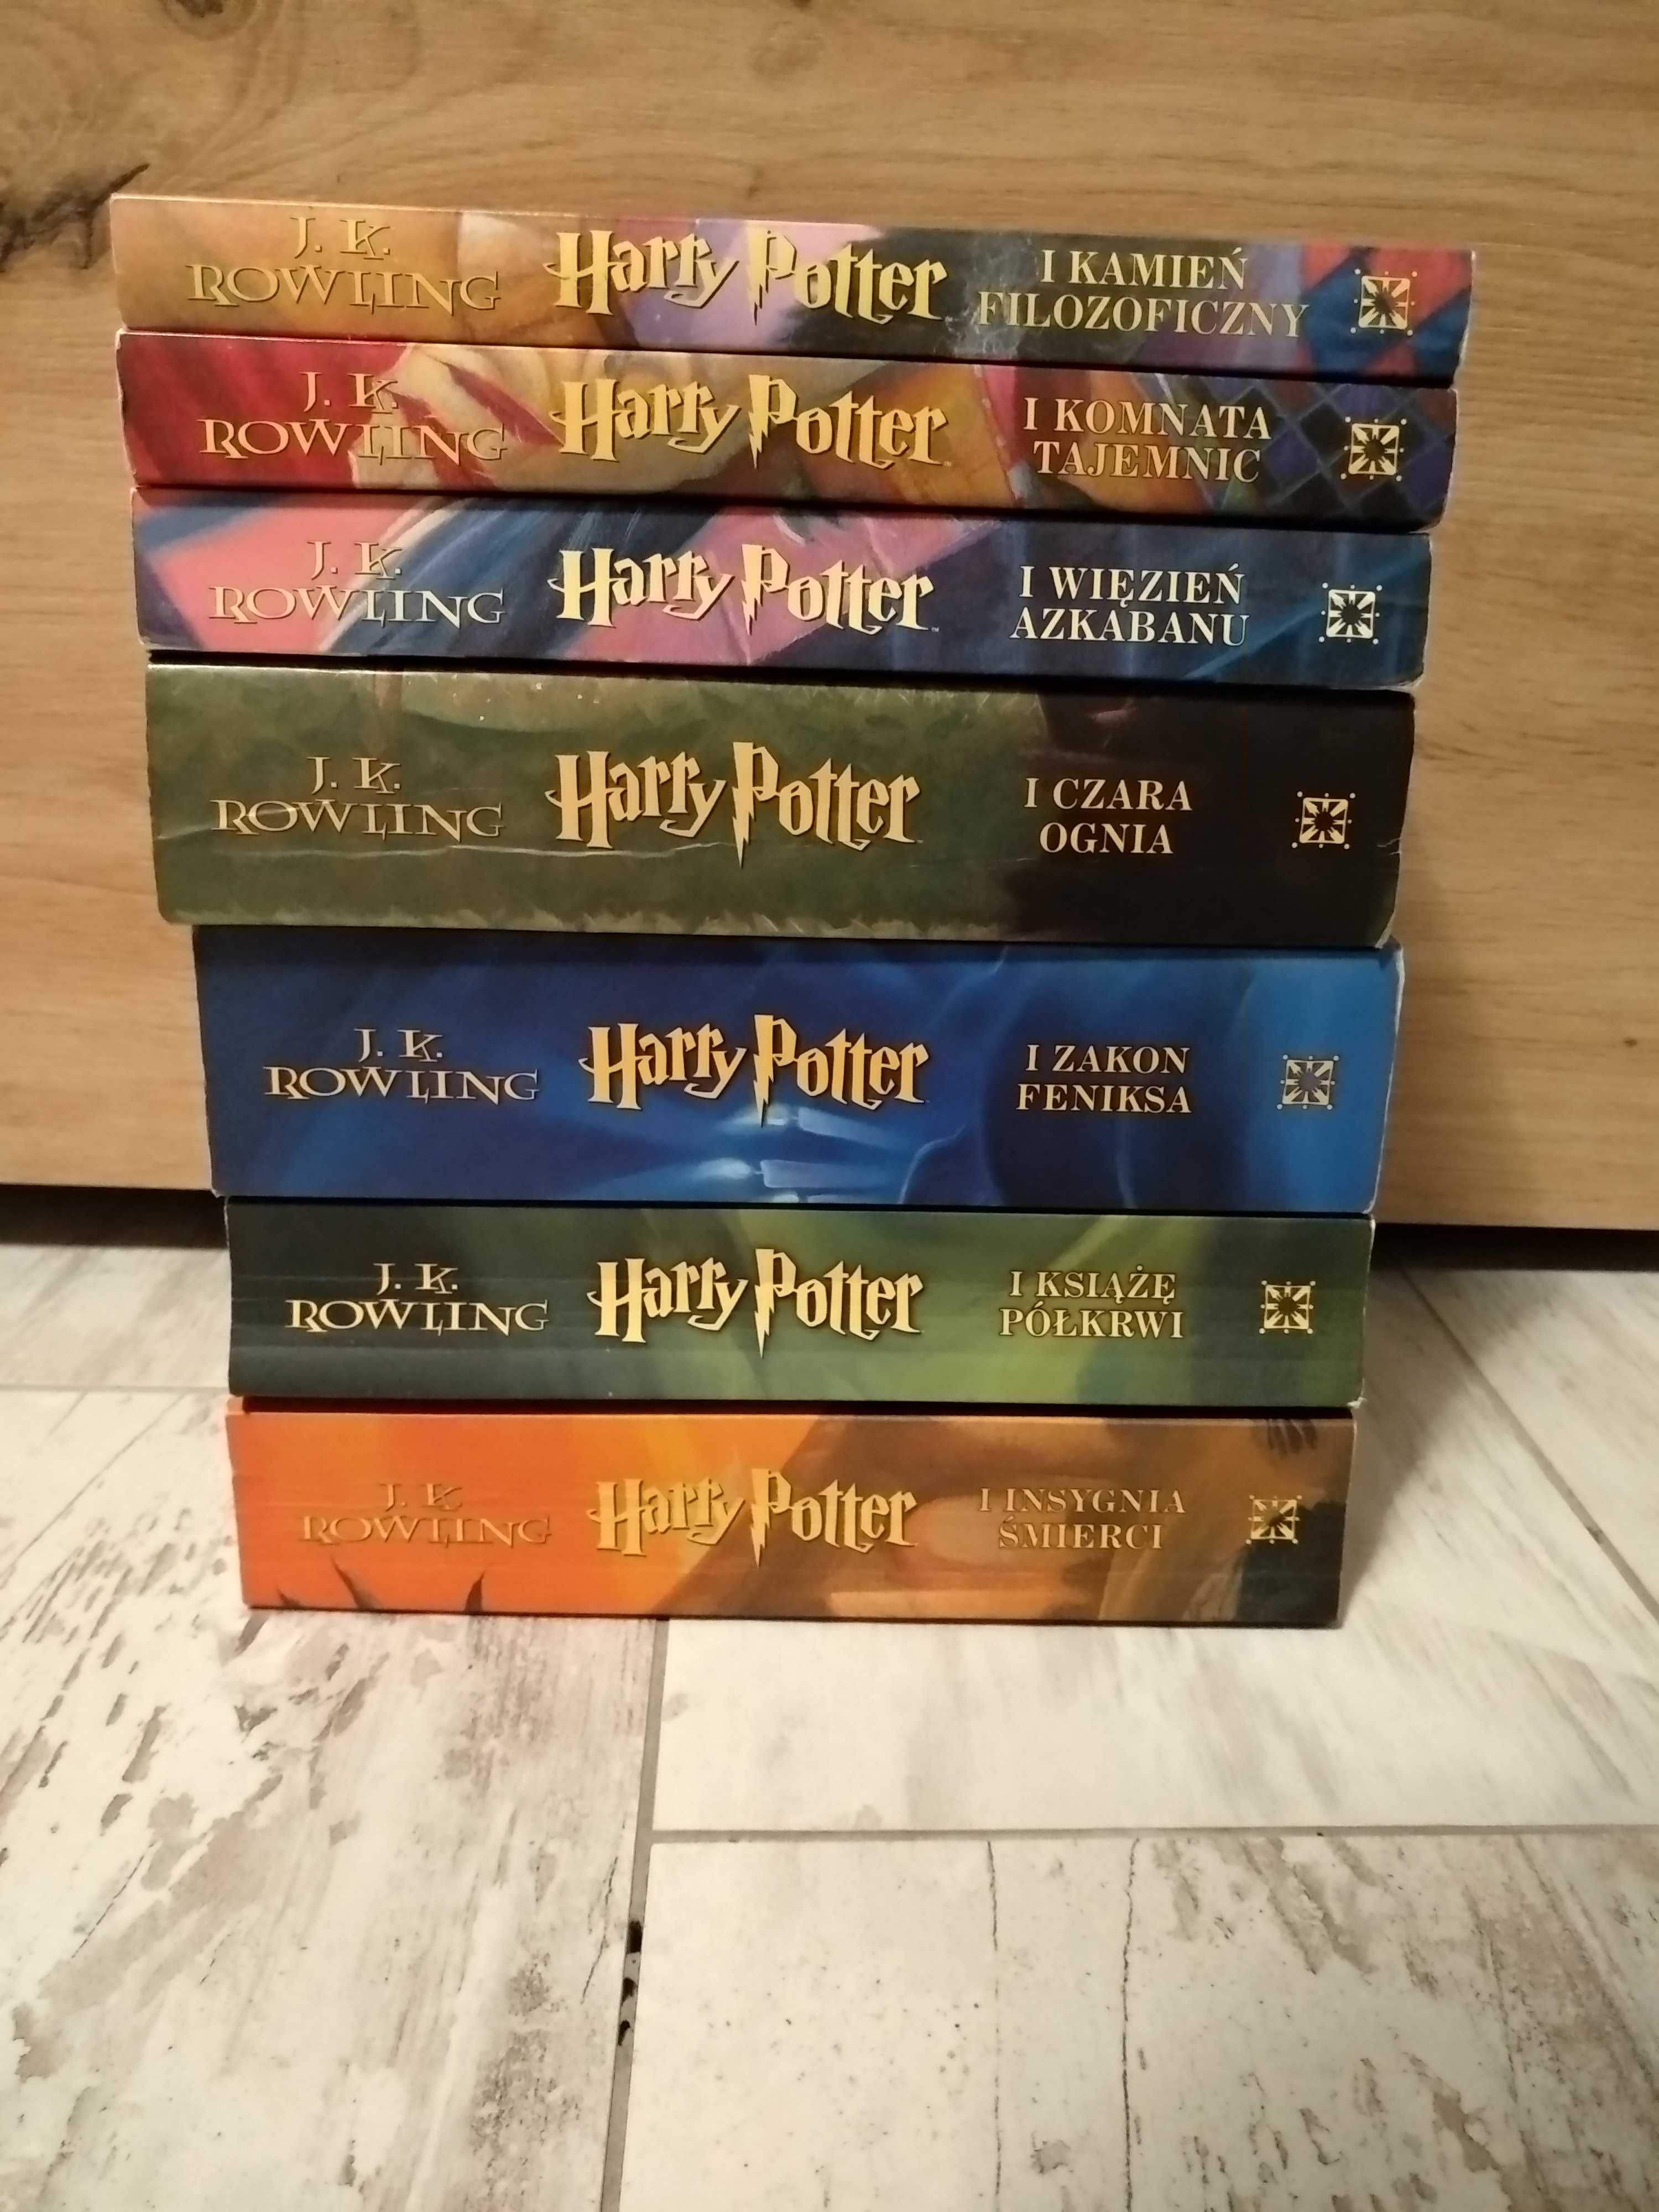 Harry Potter cała seria pierwsza szata graficzna stare wydanie